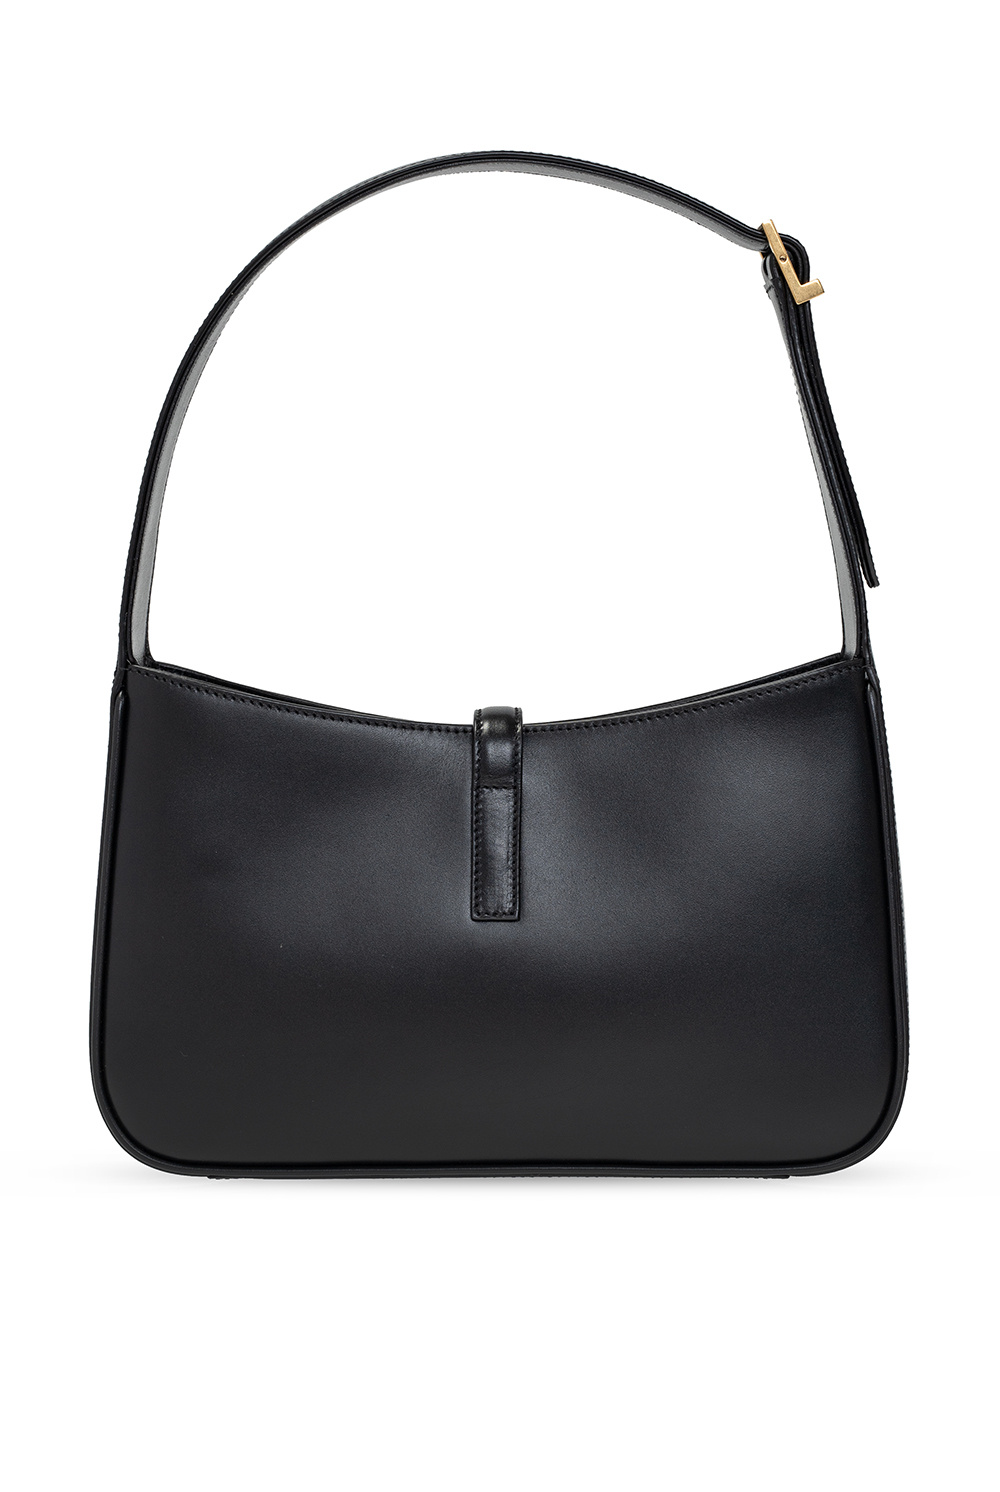 Black 'Le 5 a 7 Mini' handbag Saint Laurent - Vitkac Canada